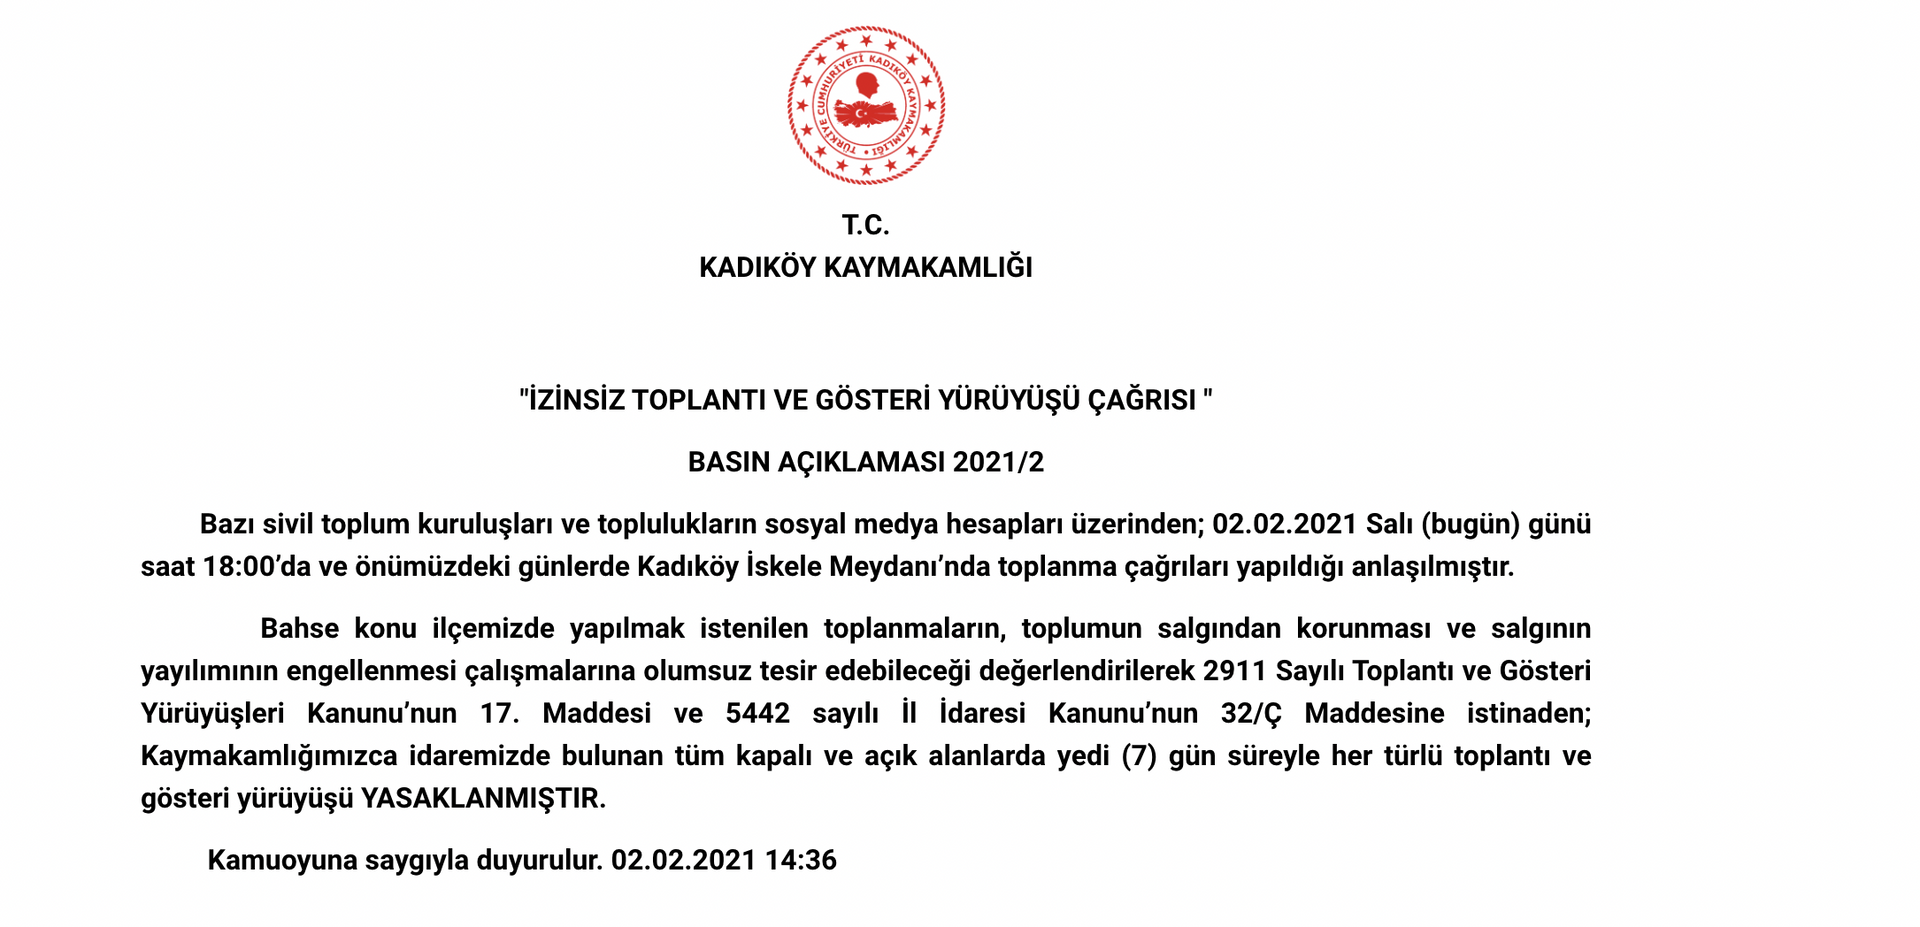 Kadıköy'de 7 gün süreyle her türlü toplantı ve gösteri yürüyüşü yasaklandı - Sputnik Türkiye, 1920, 02.02.2021